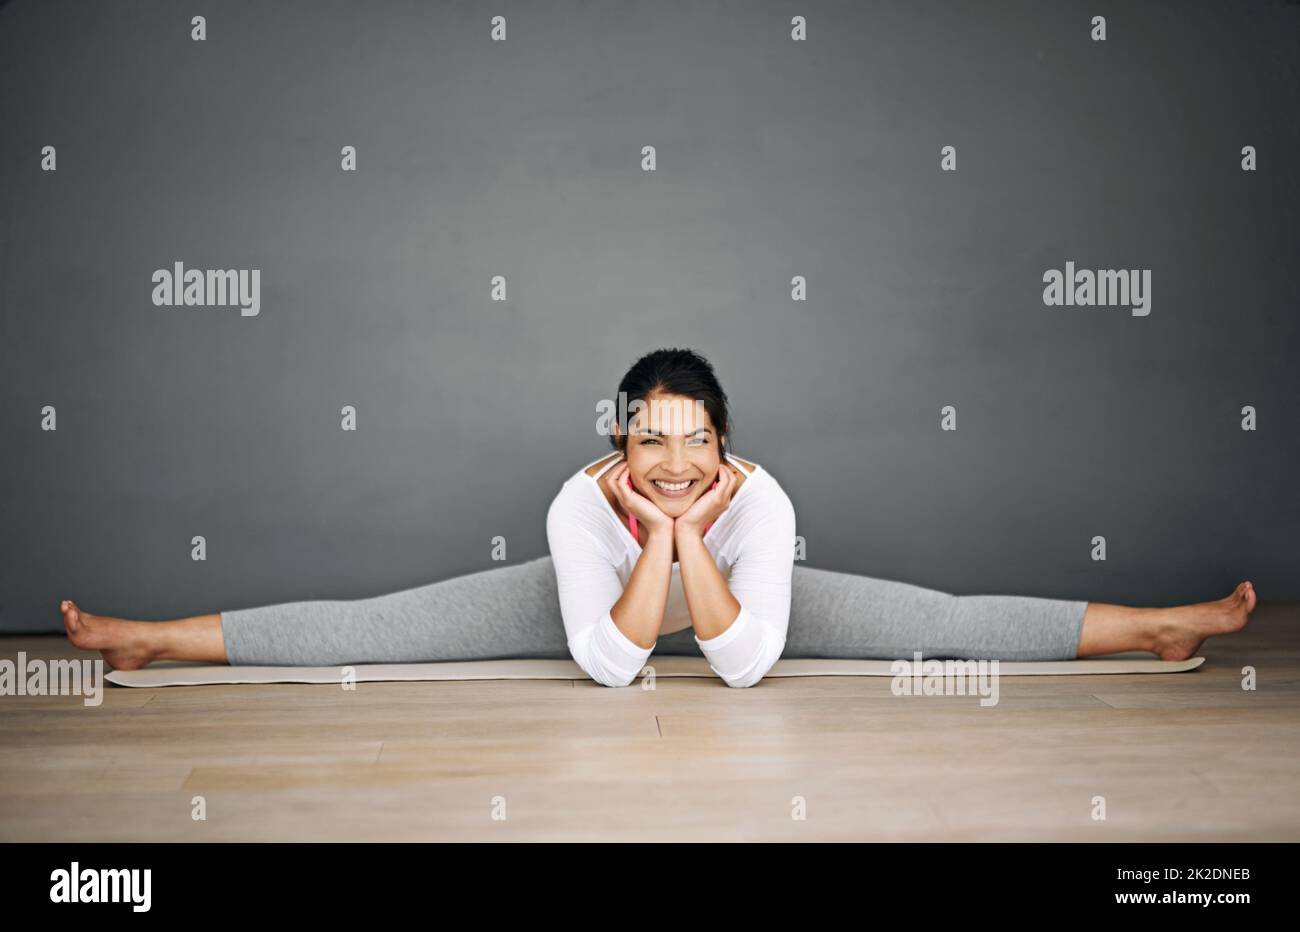 Yoga ist der beste Weg, um den Tag zu beginnen. Porträt einer attraktiven jungen Frau, die die Splits in ihrer Yoga-Routine macht. Stockfoto